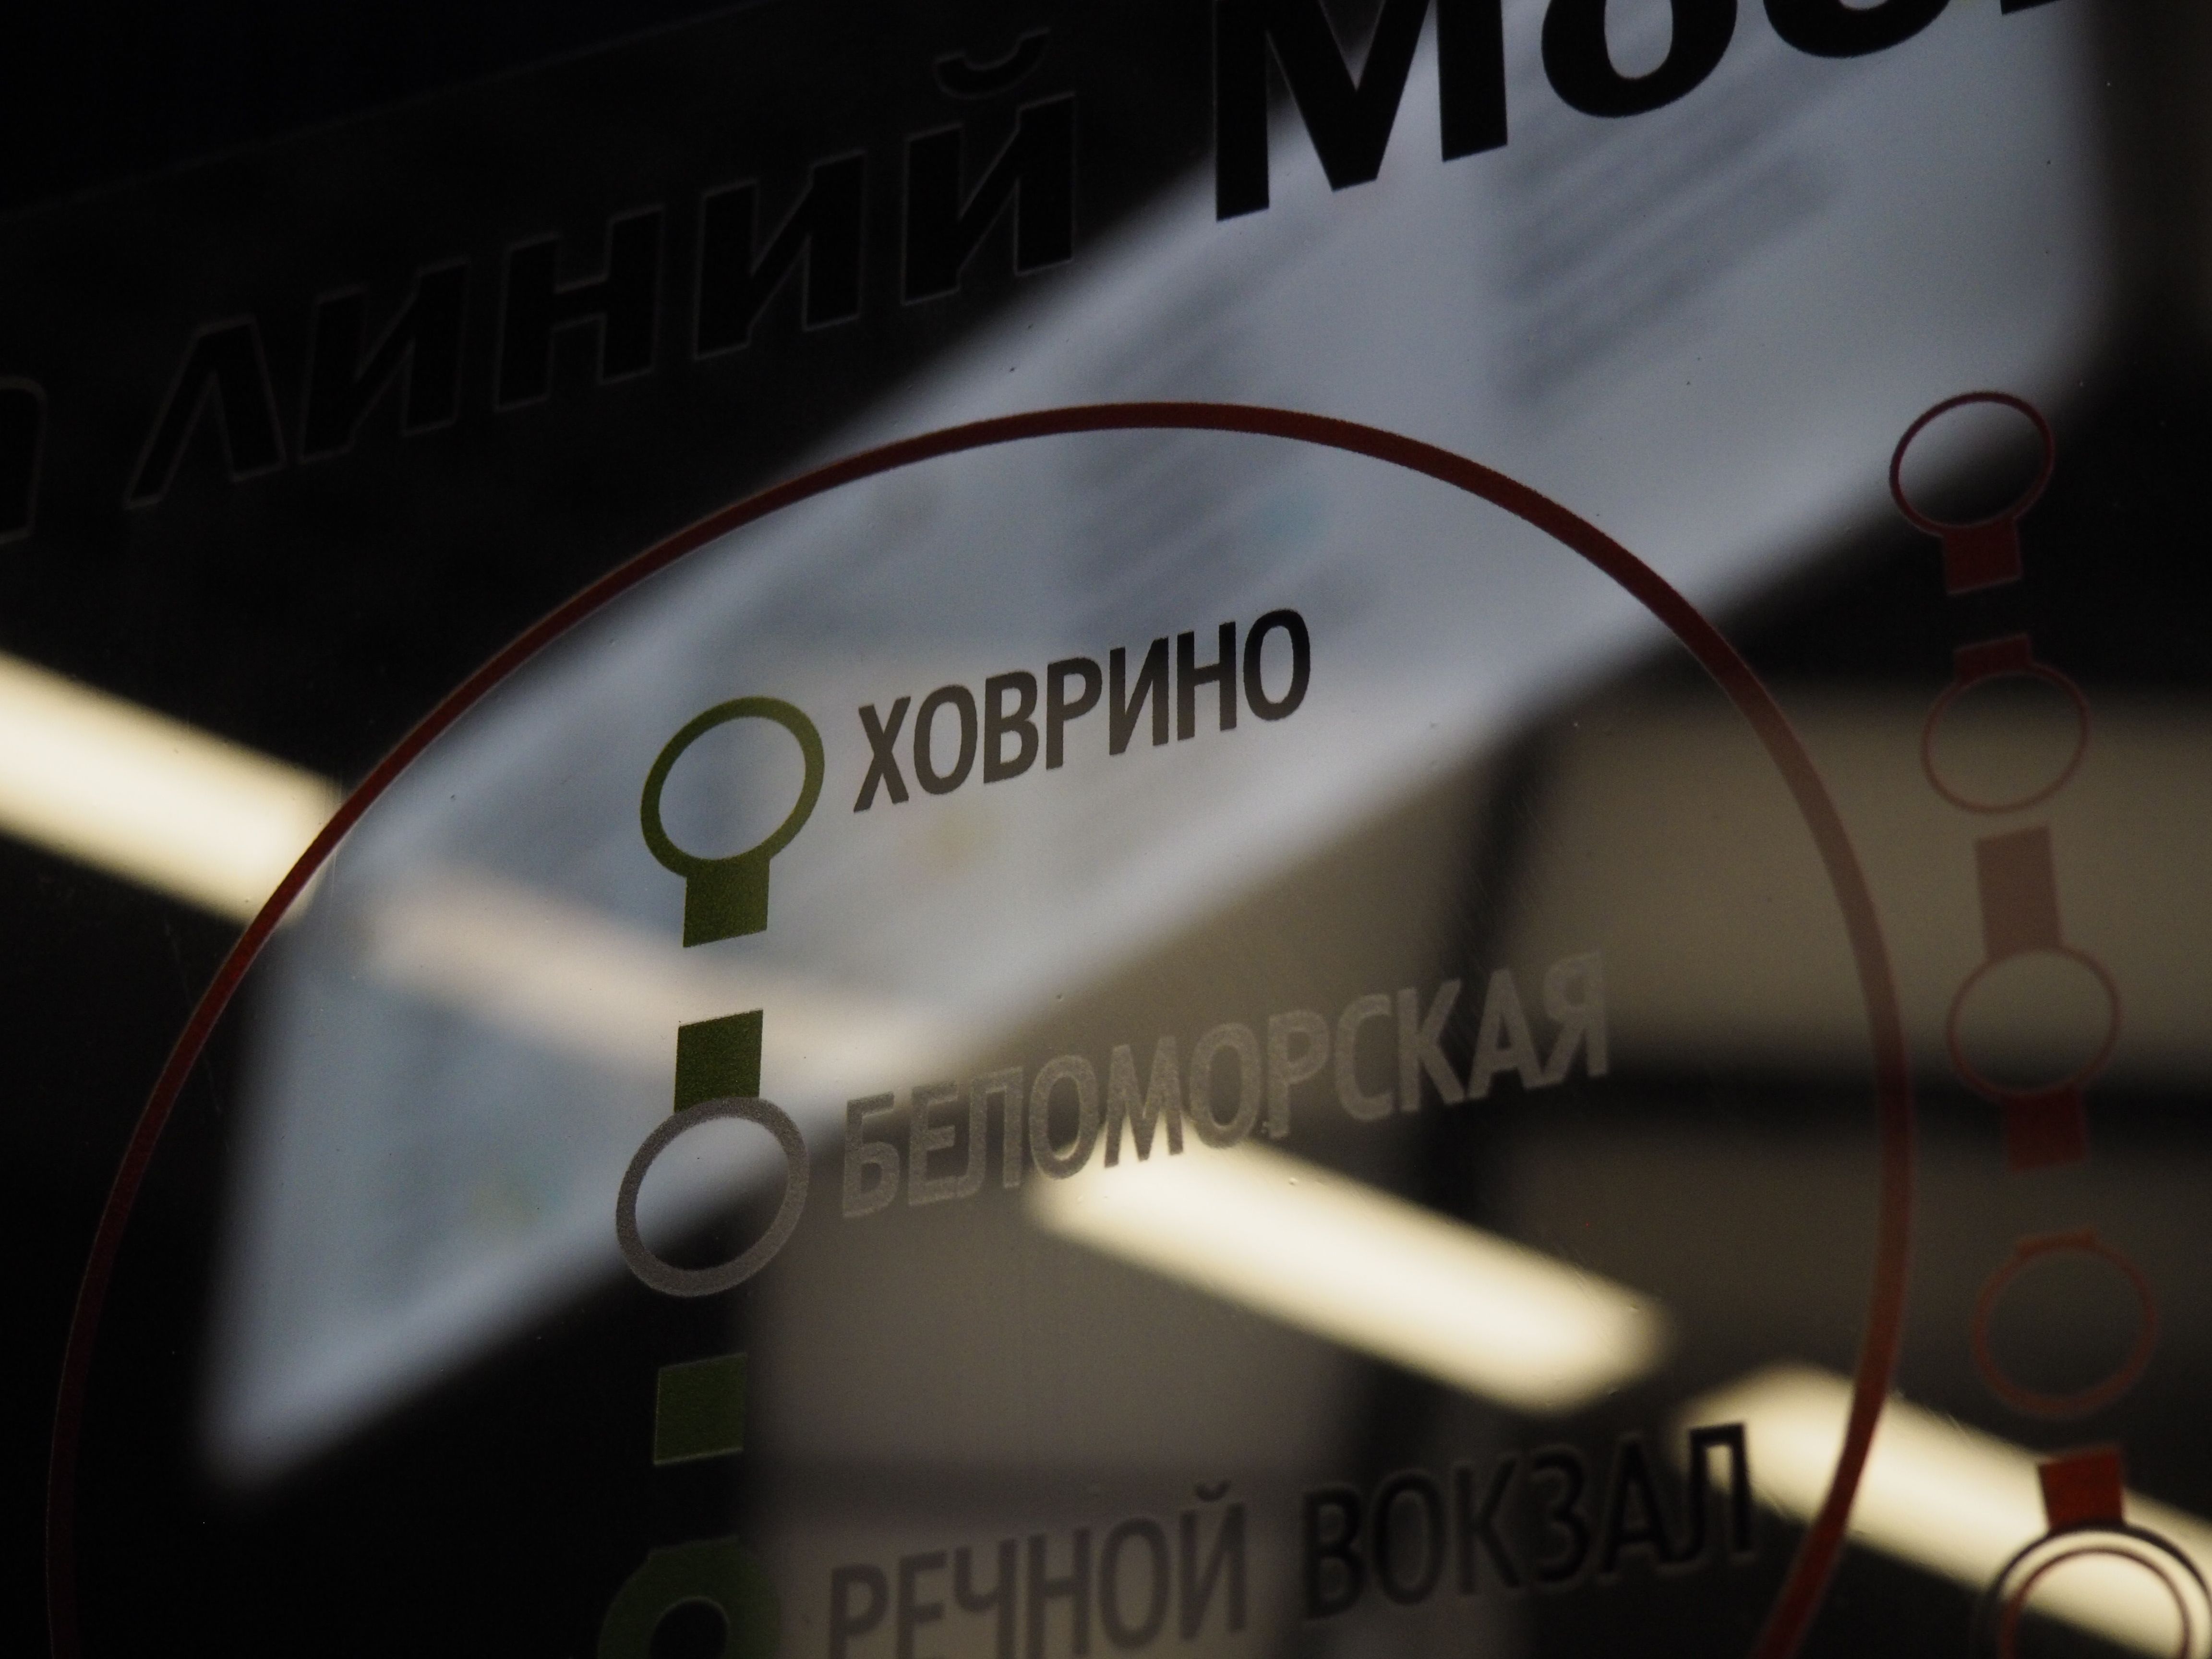 Данные меры позволят раньше открыть станцию "Беломорская". Фото: Антон Гердо